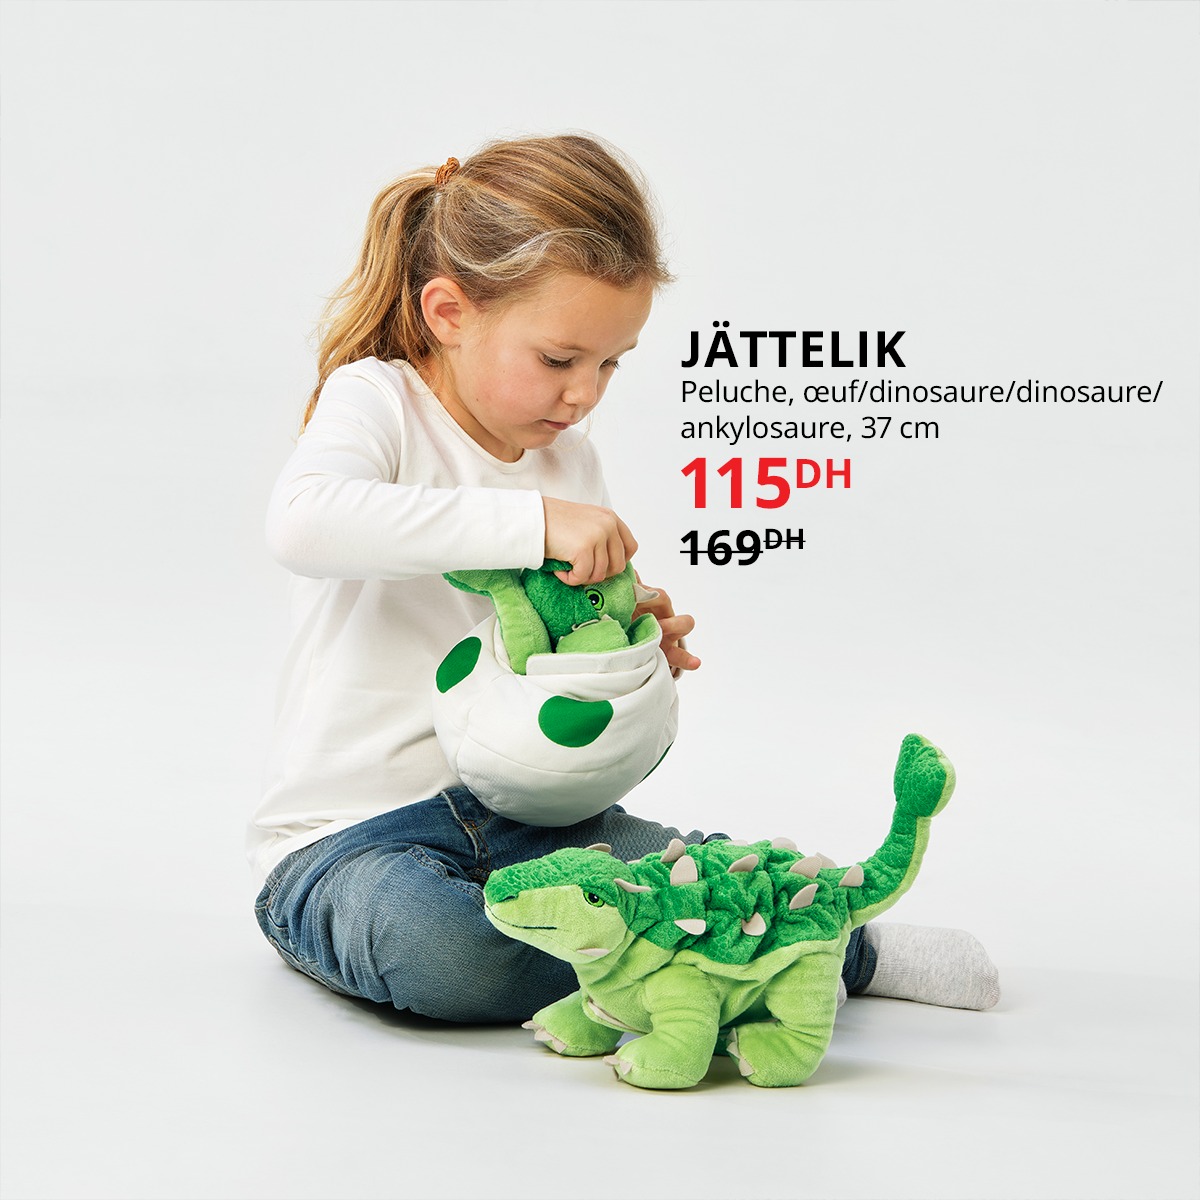 Soldes Ikea Maroc Peluche œuf dinosaure JATTELIK 115Dhs au lieu de 169Dhs